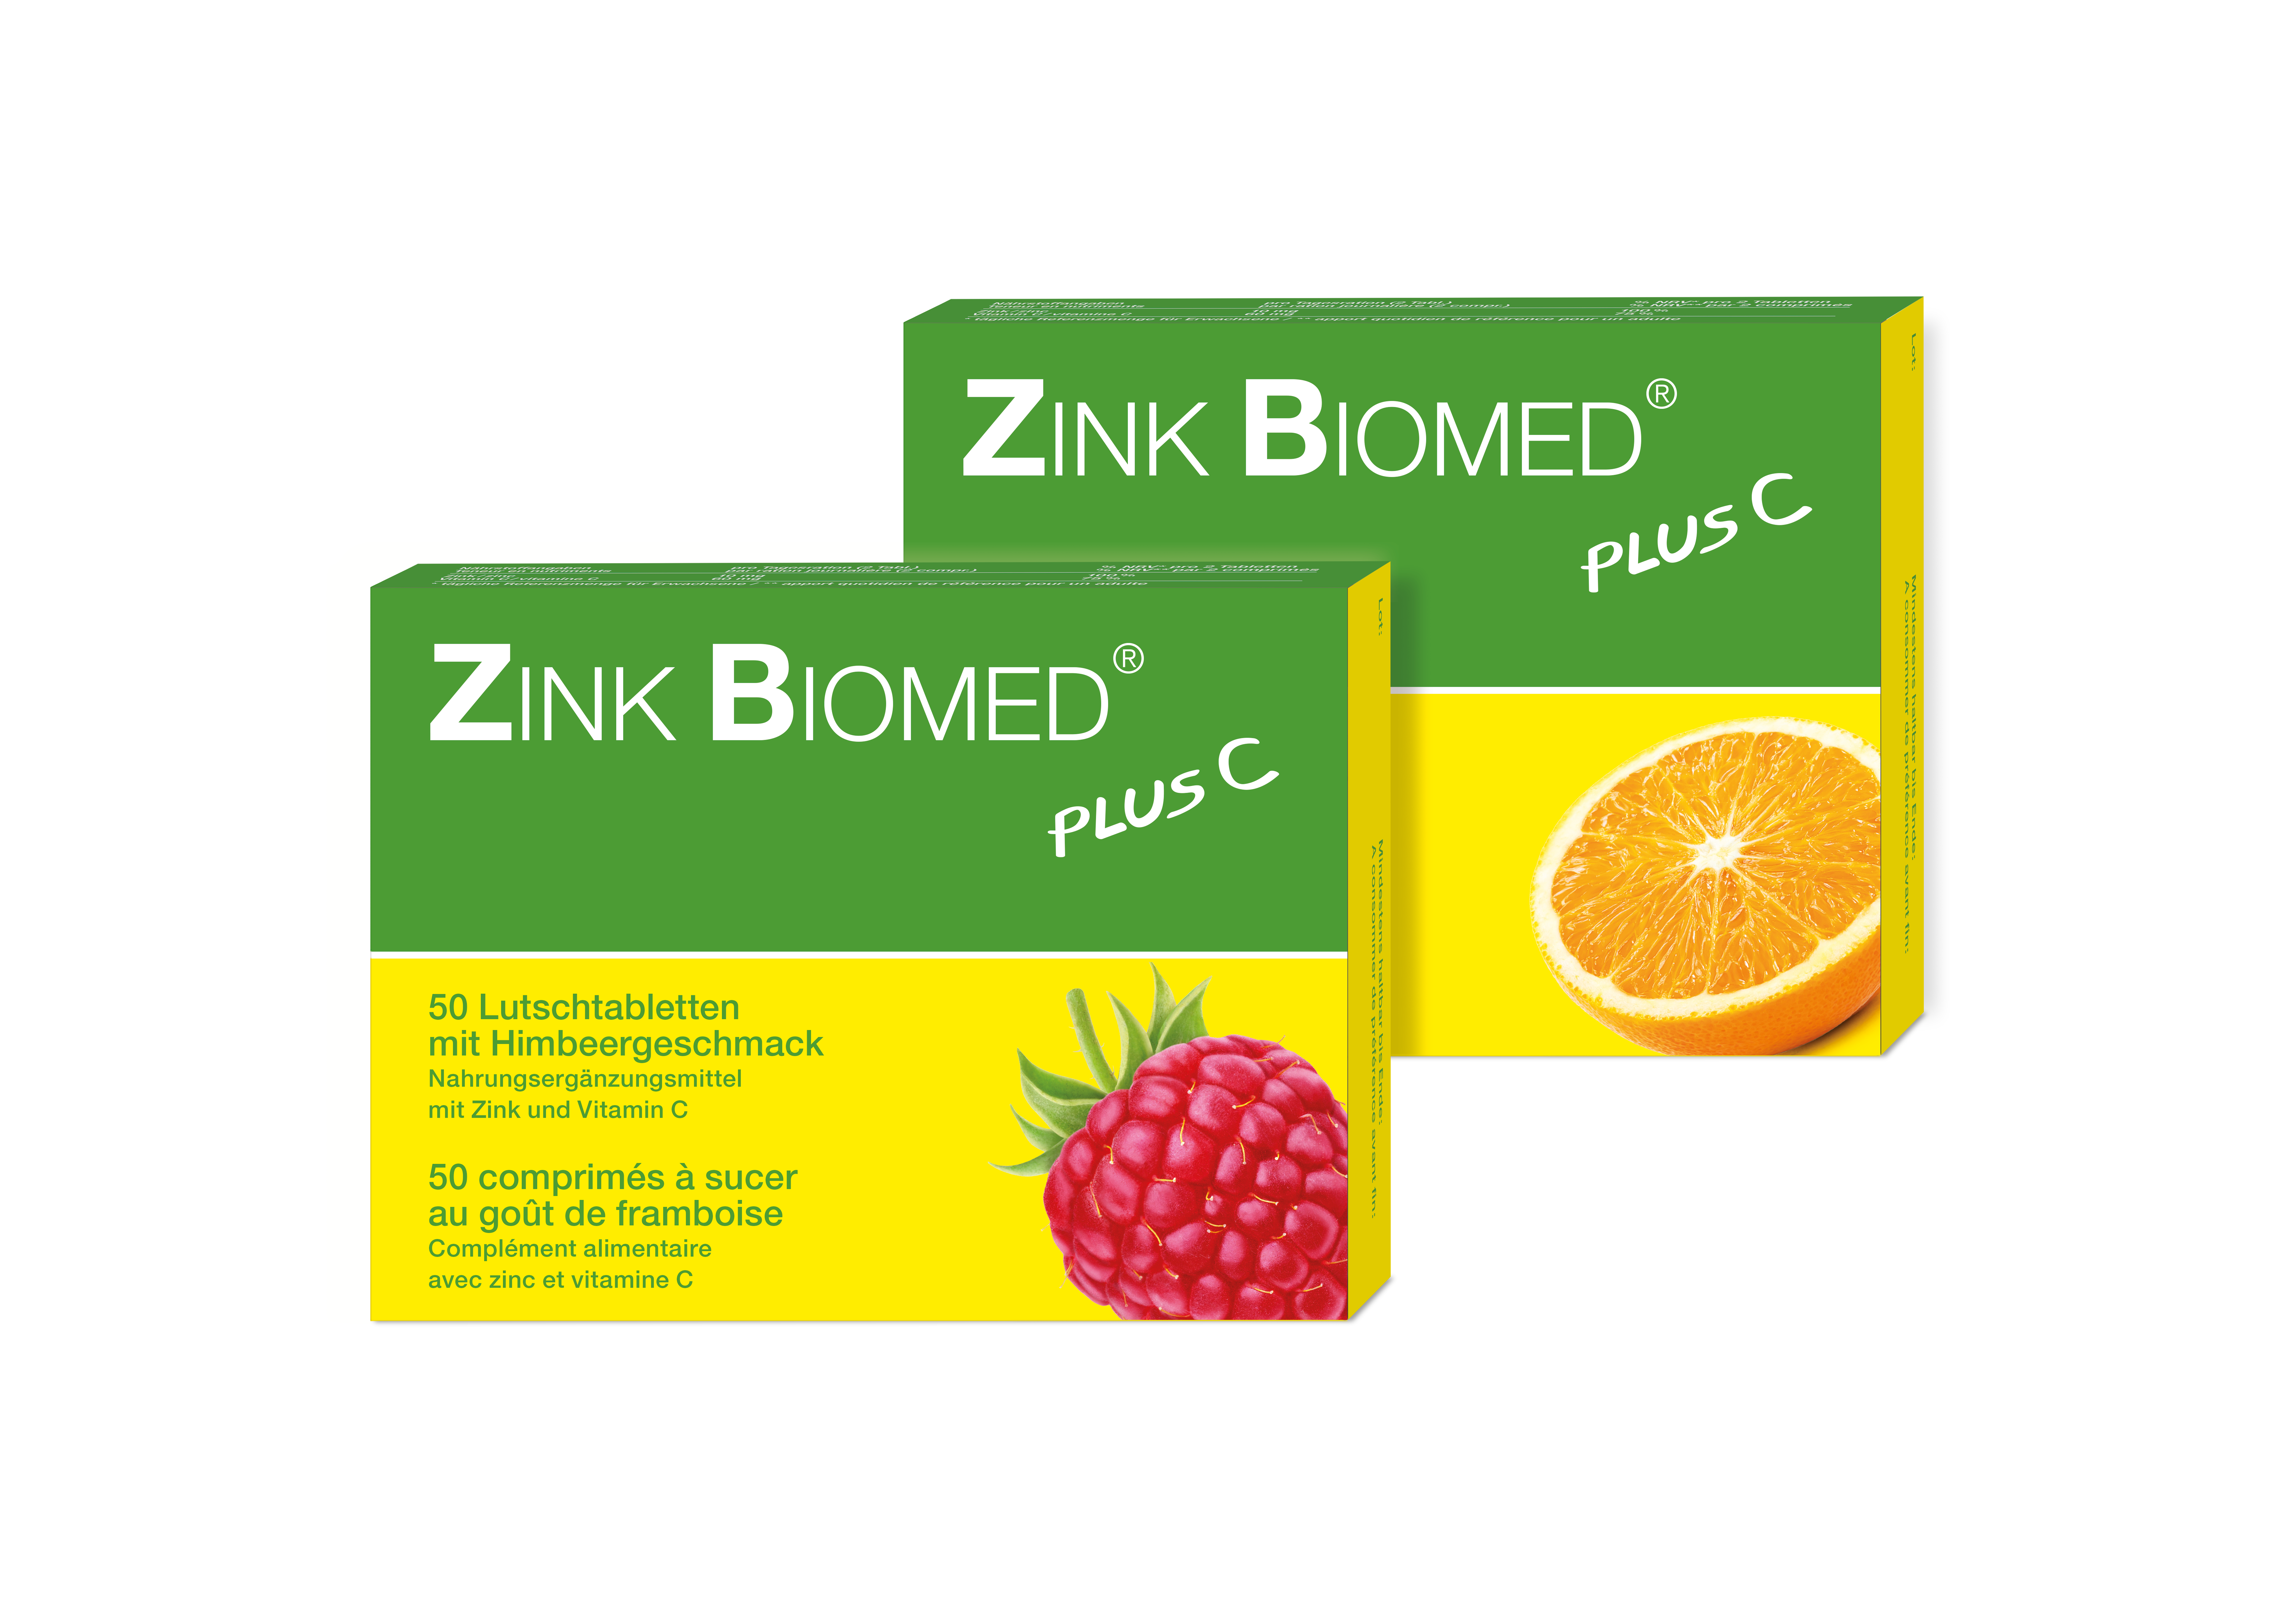 Zink Biomed plus C